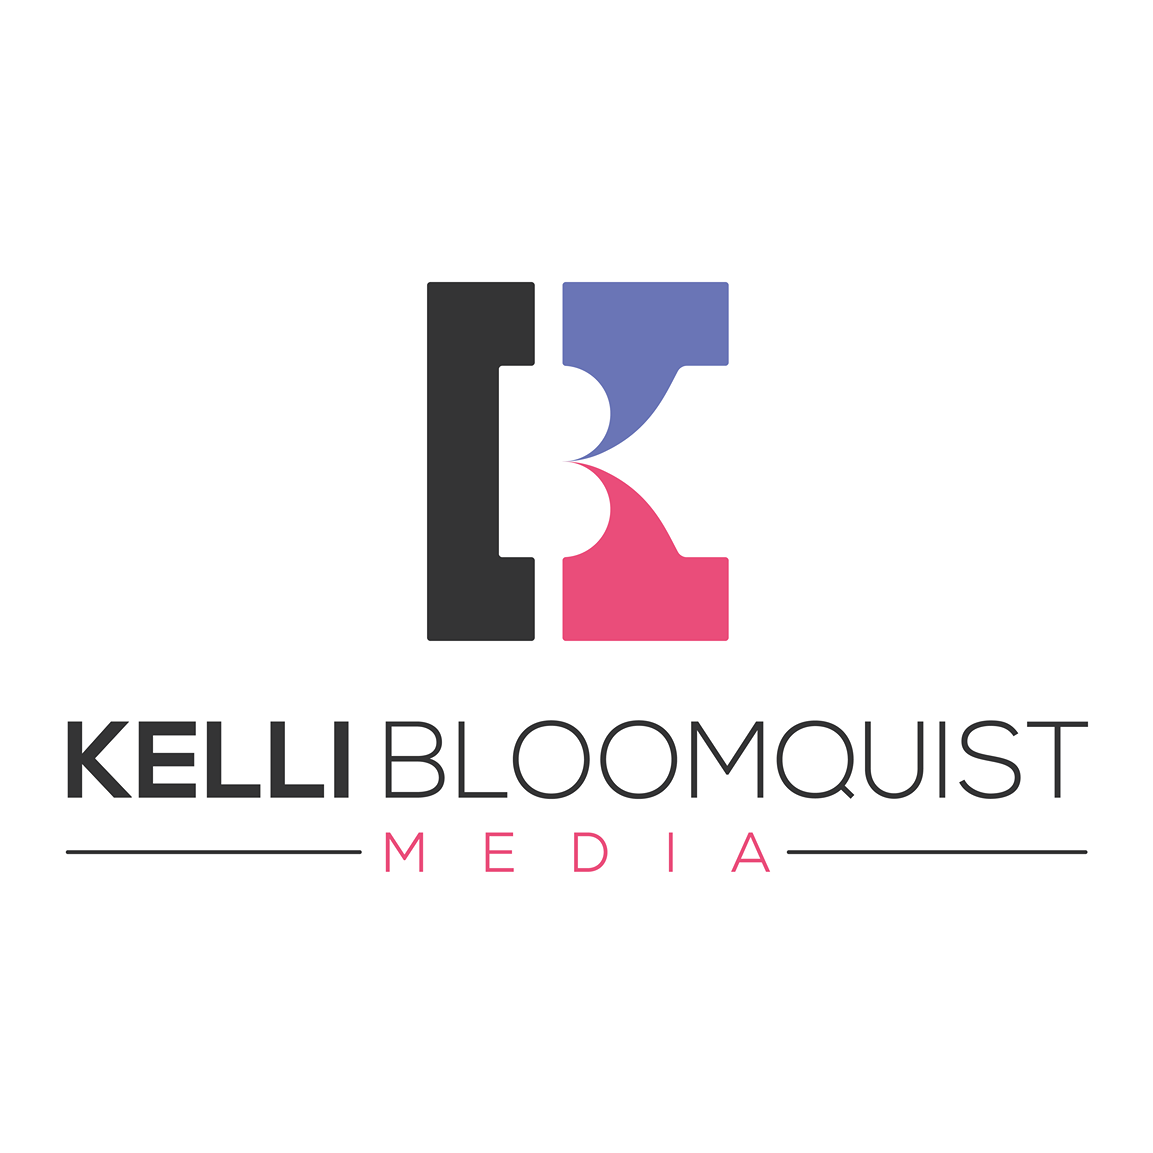 Kelli Bloomquist Media's Image